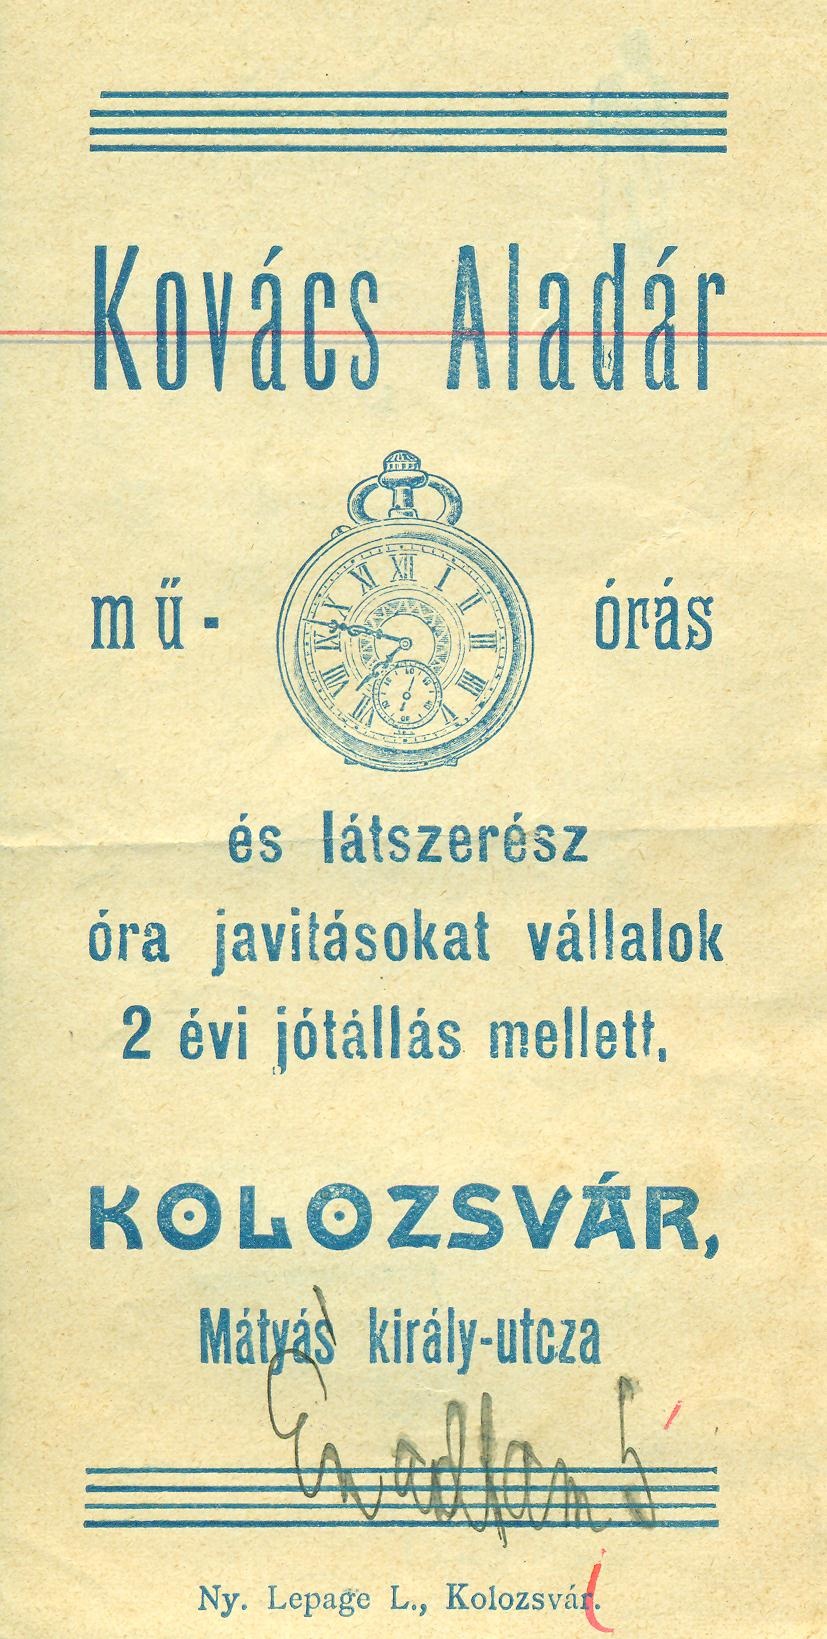 Kovács Aladár műórás és látszerész (Magyar Kereskedelmi és Vendéglátóipari Múzeum CC BY-NC-SA)